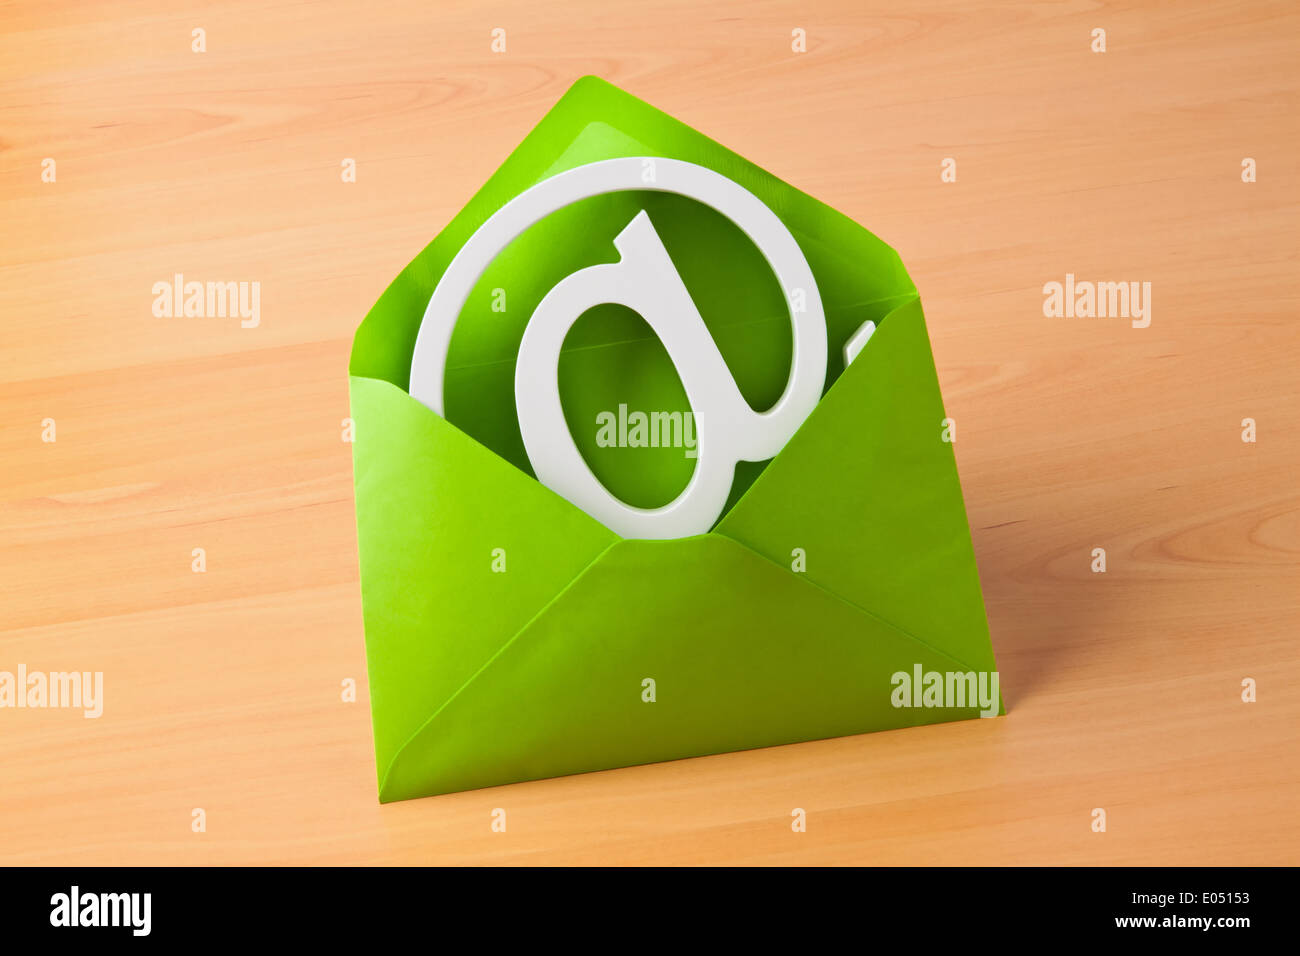 Envelope email logo immagini e fotografie stock ad alta risoluzione - Alamy